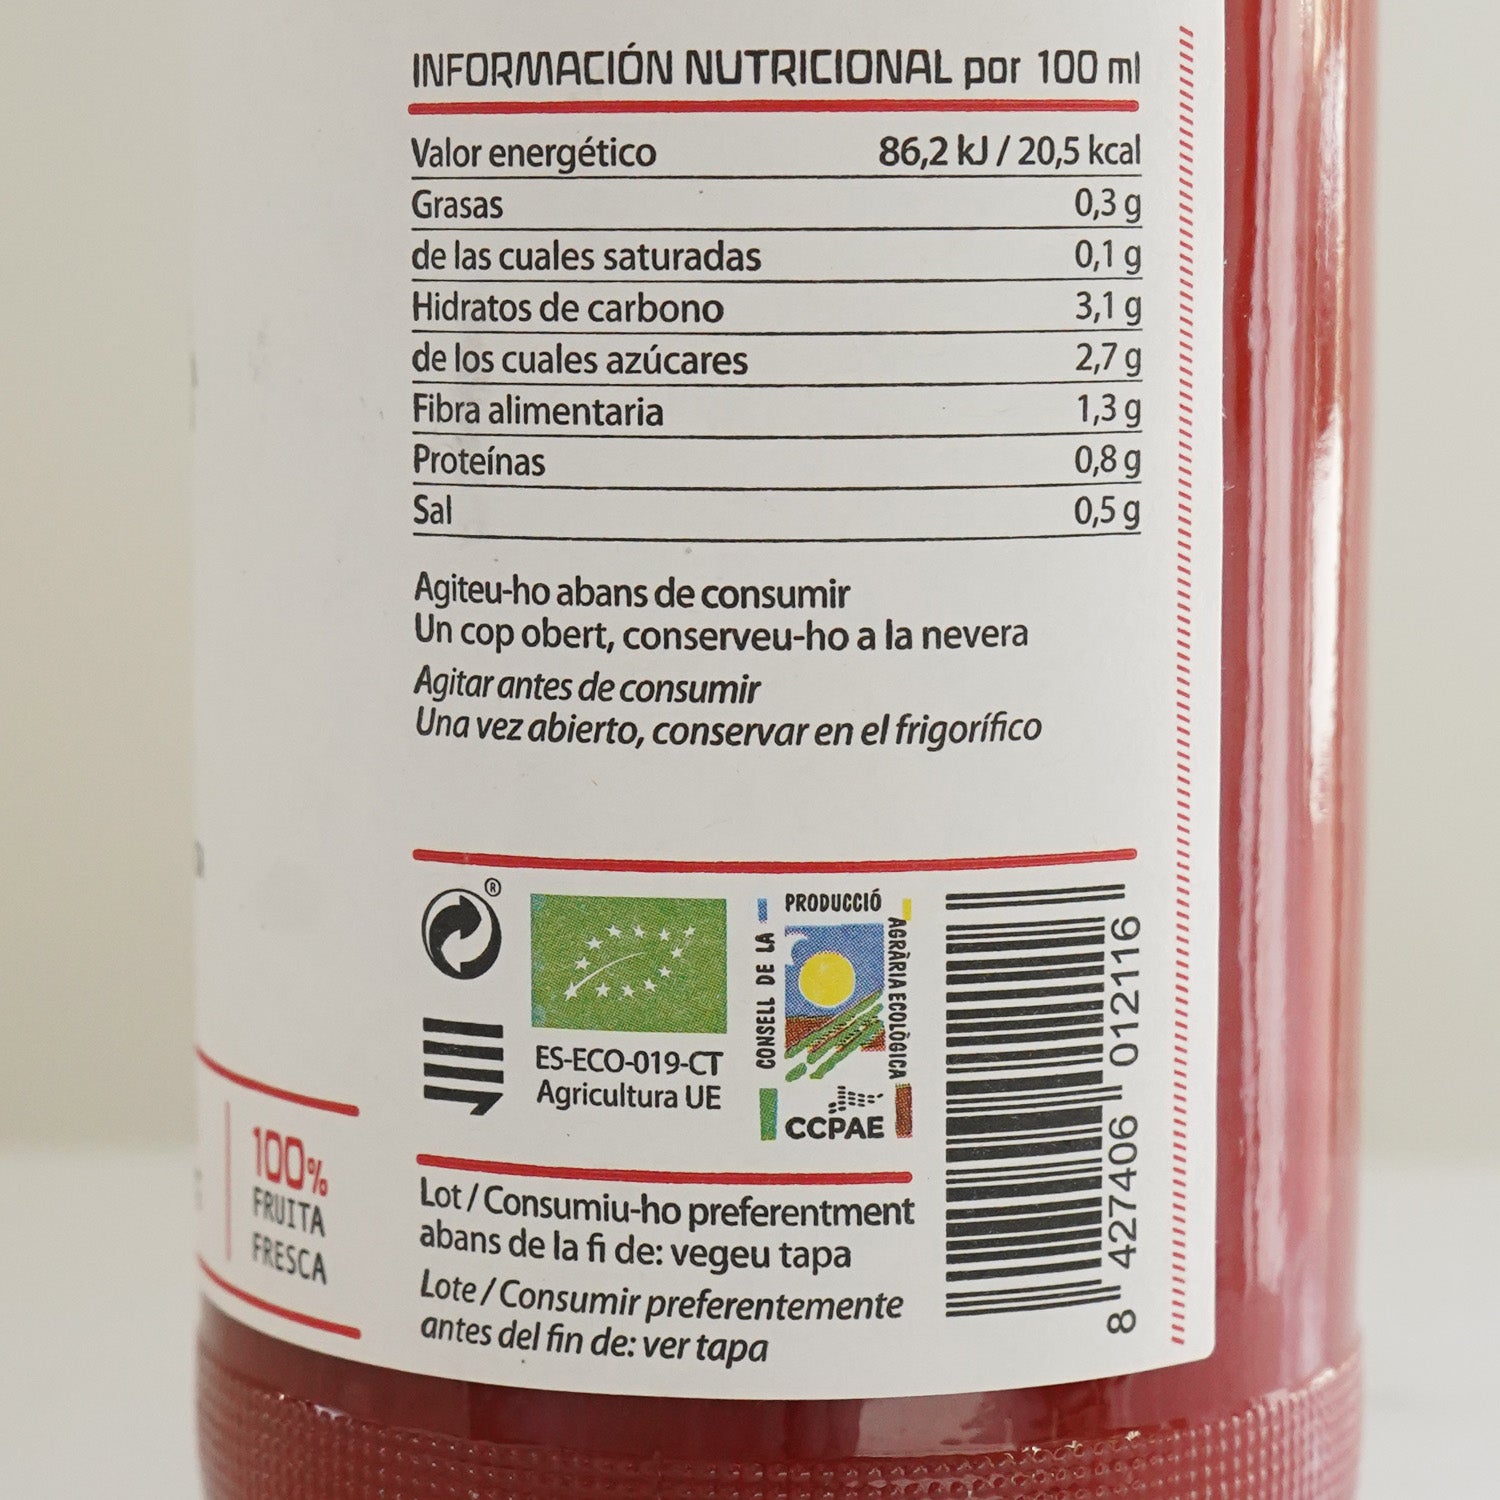 Detalle de la etiqueta de información nutricional del zumo de tomate ecológico